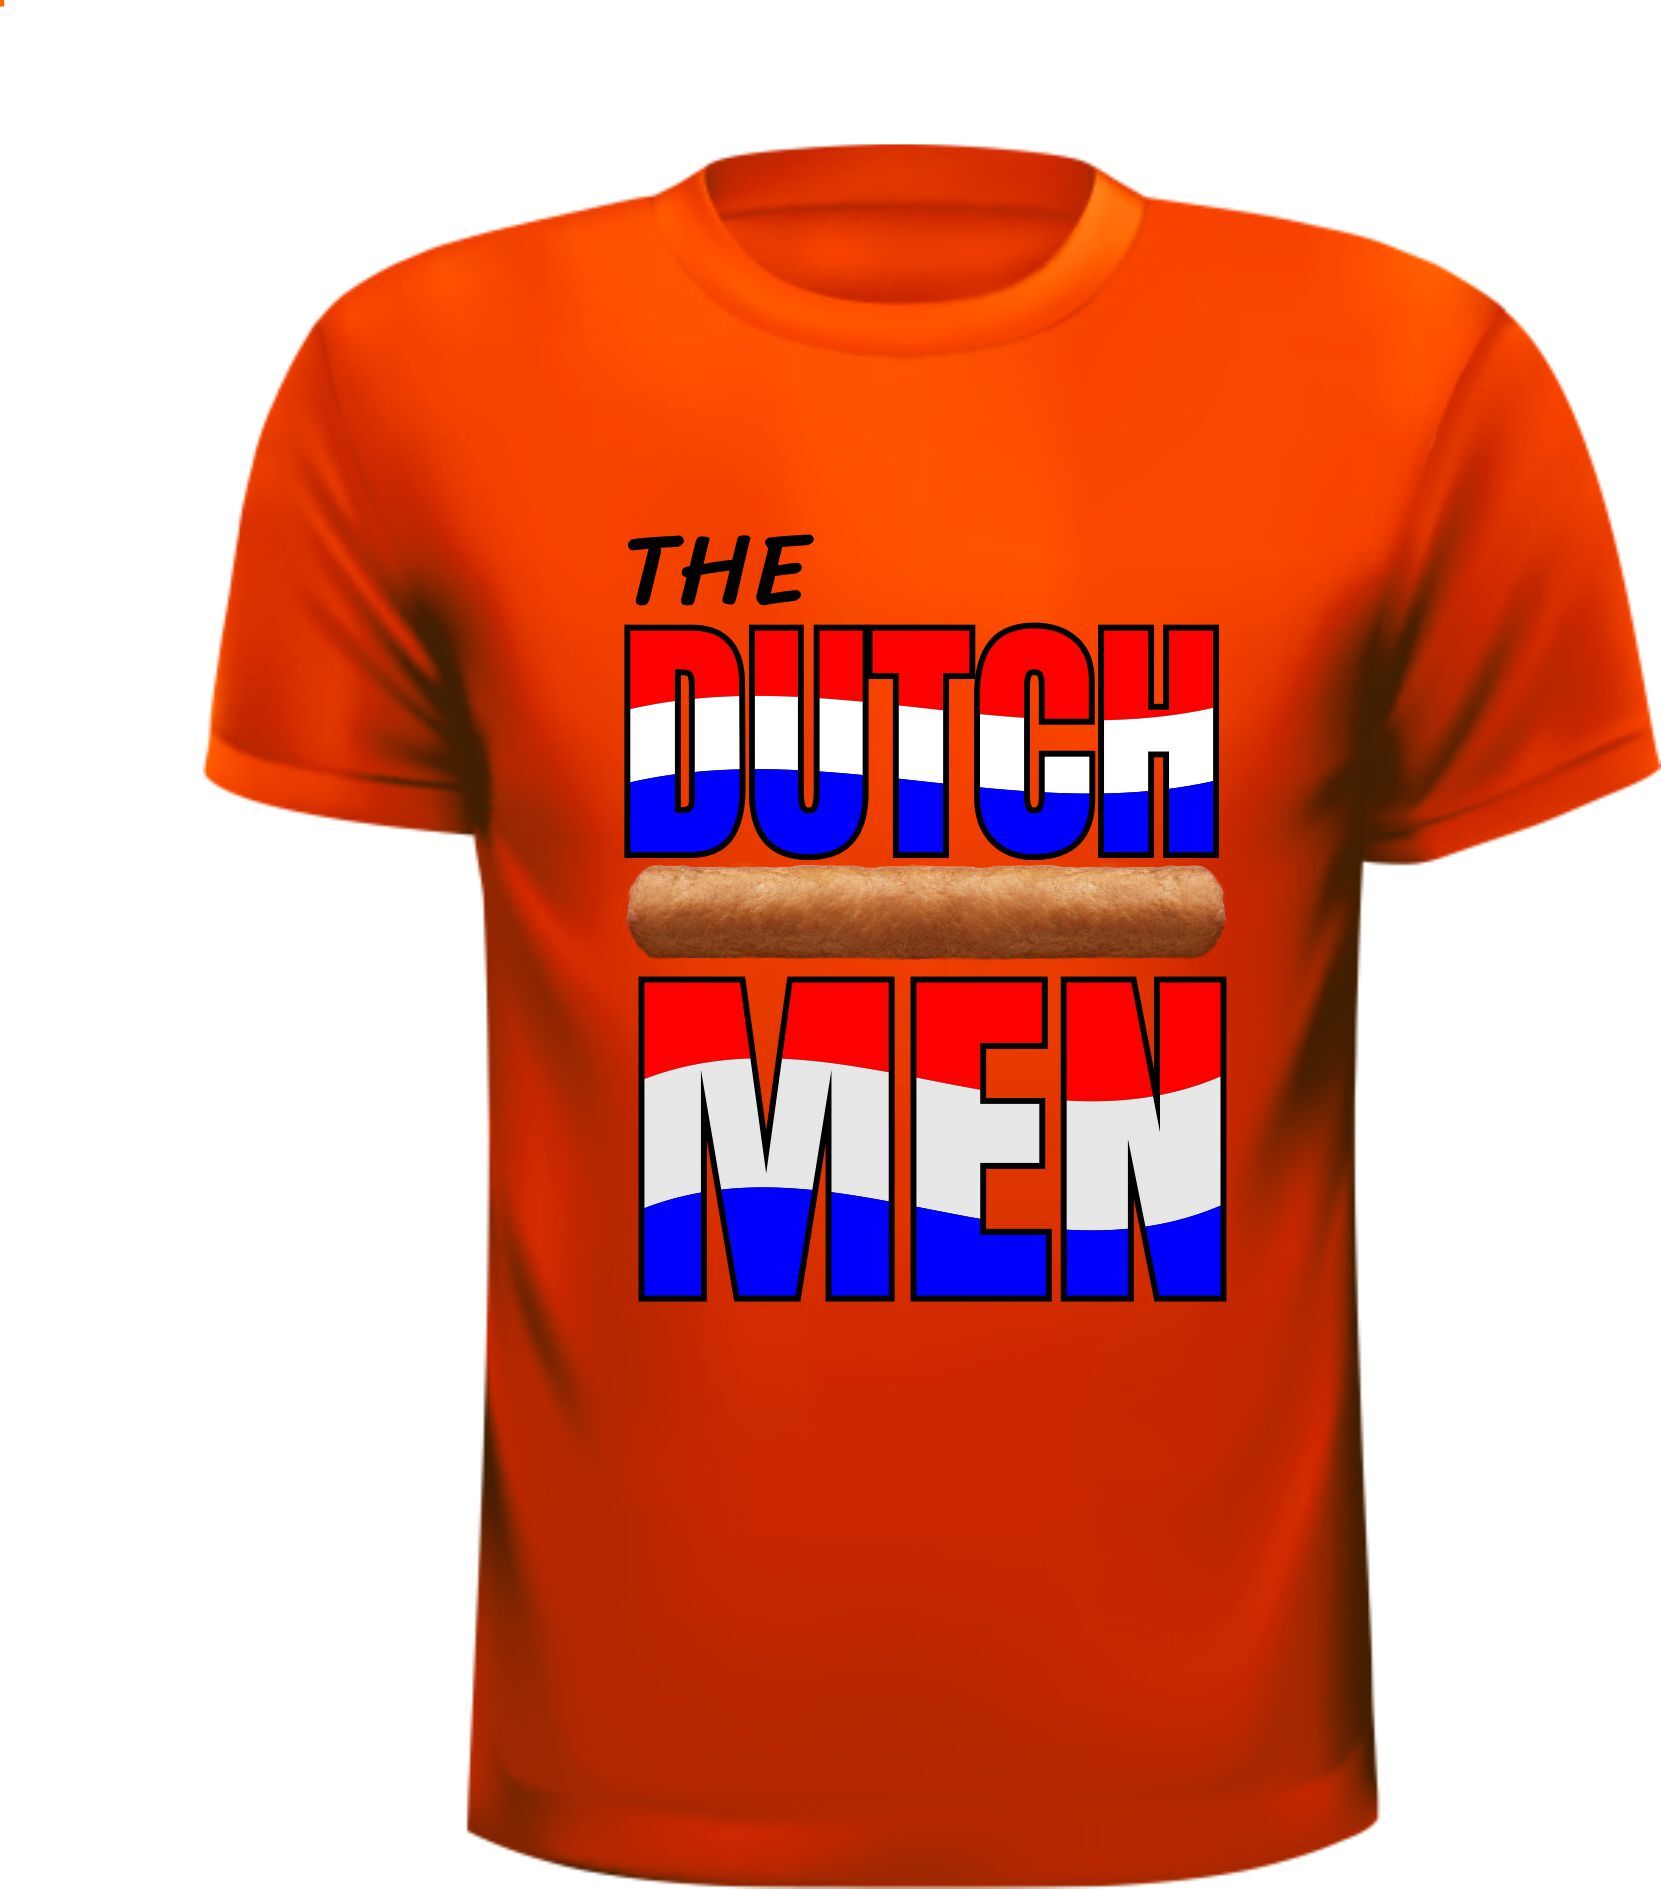 Oranje shirt voor de The Dutch frikandellen man